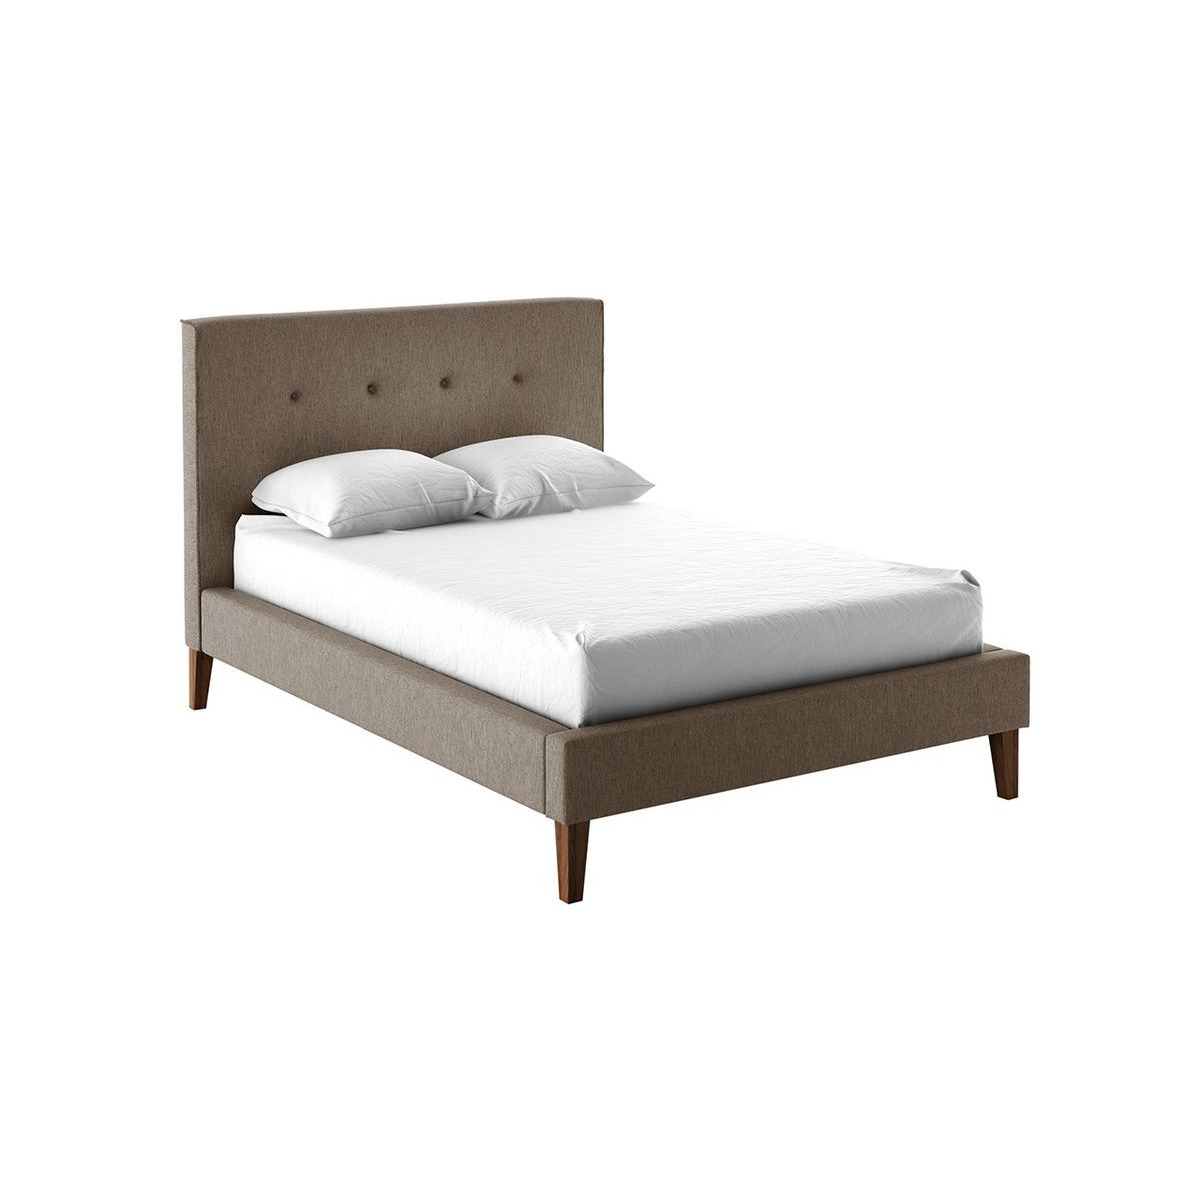 Inspire Upholstered Bed Frame, light brown - image 1